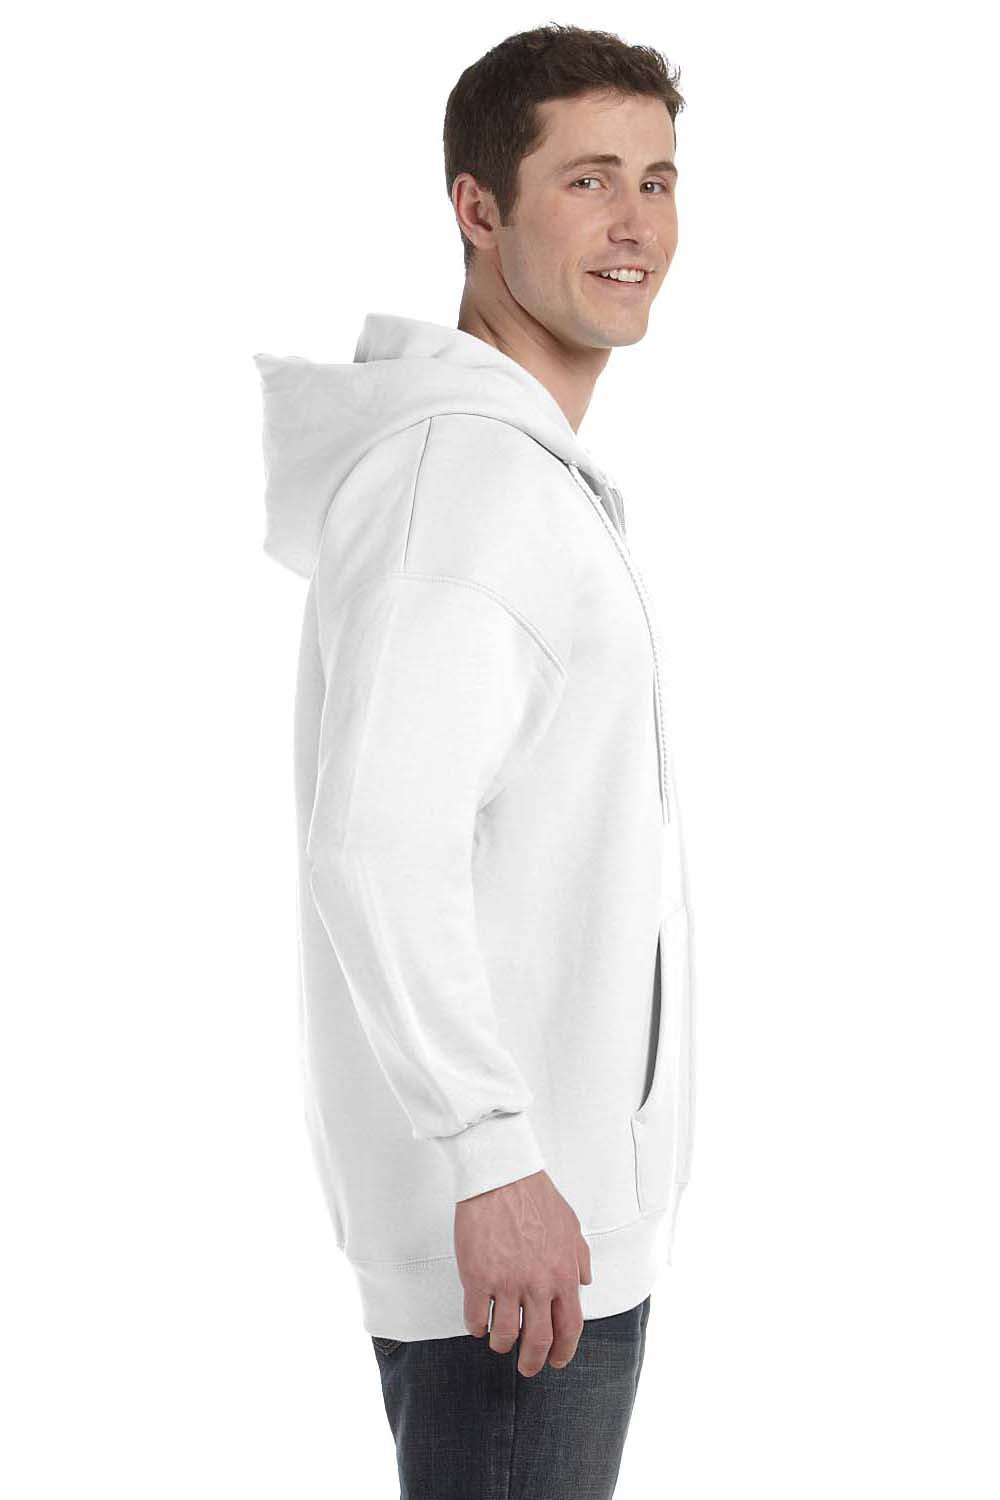 Hanes F280 Mens Ultimate Cotton PrintPro XP Full Zip Hooded Sweatshirt Hoodie White Side